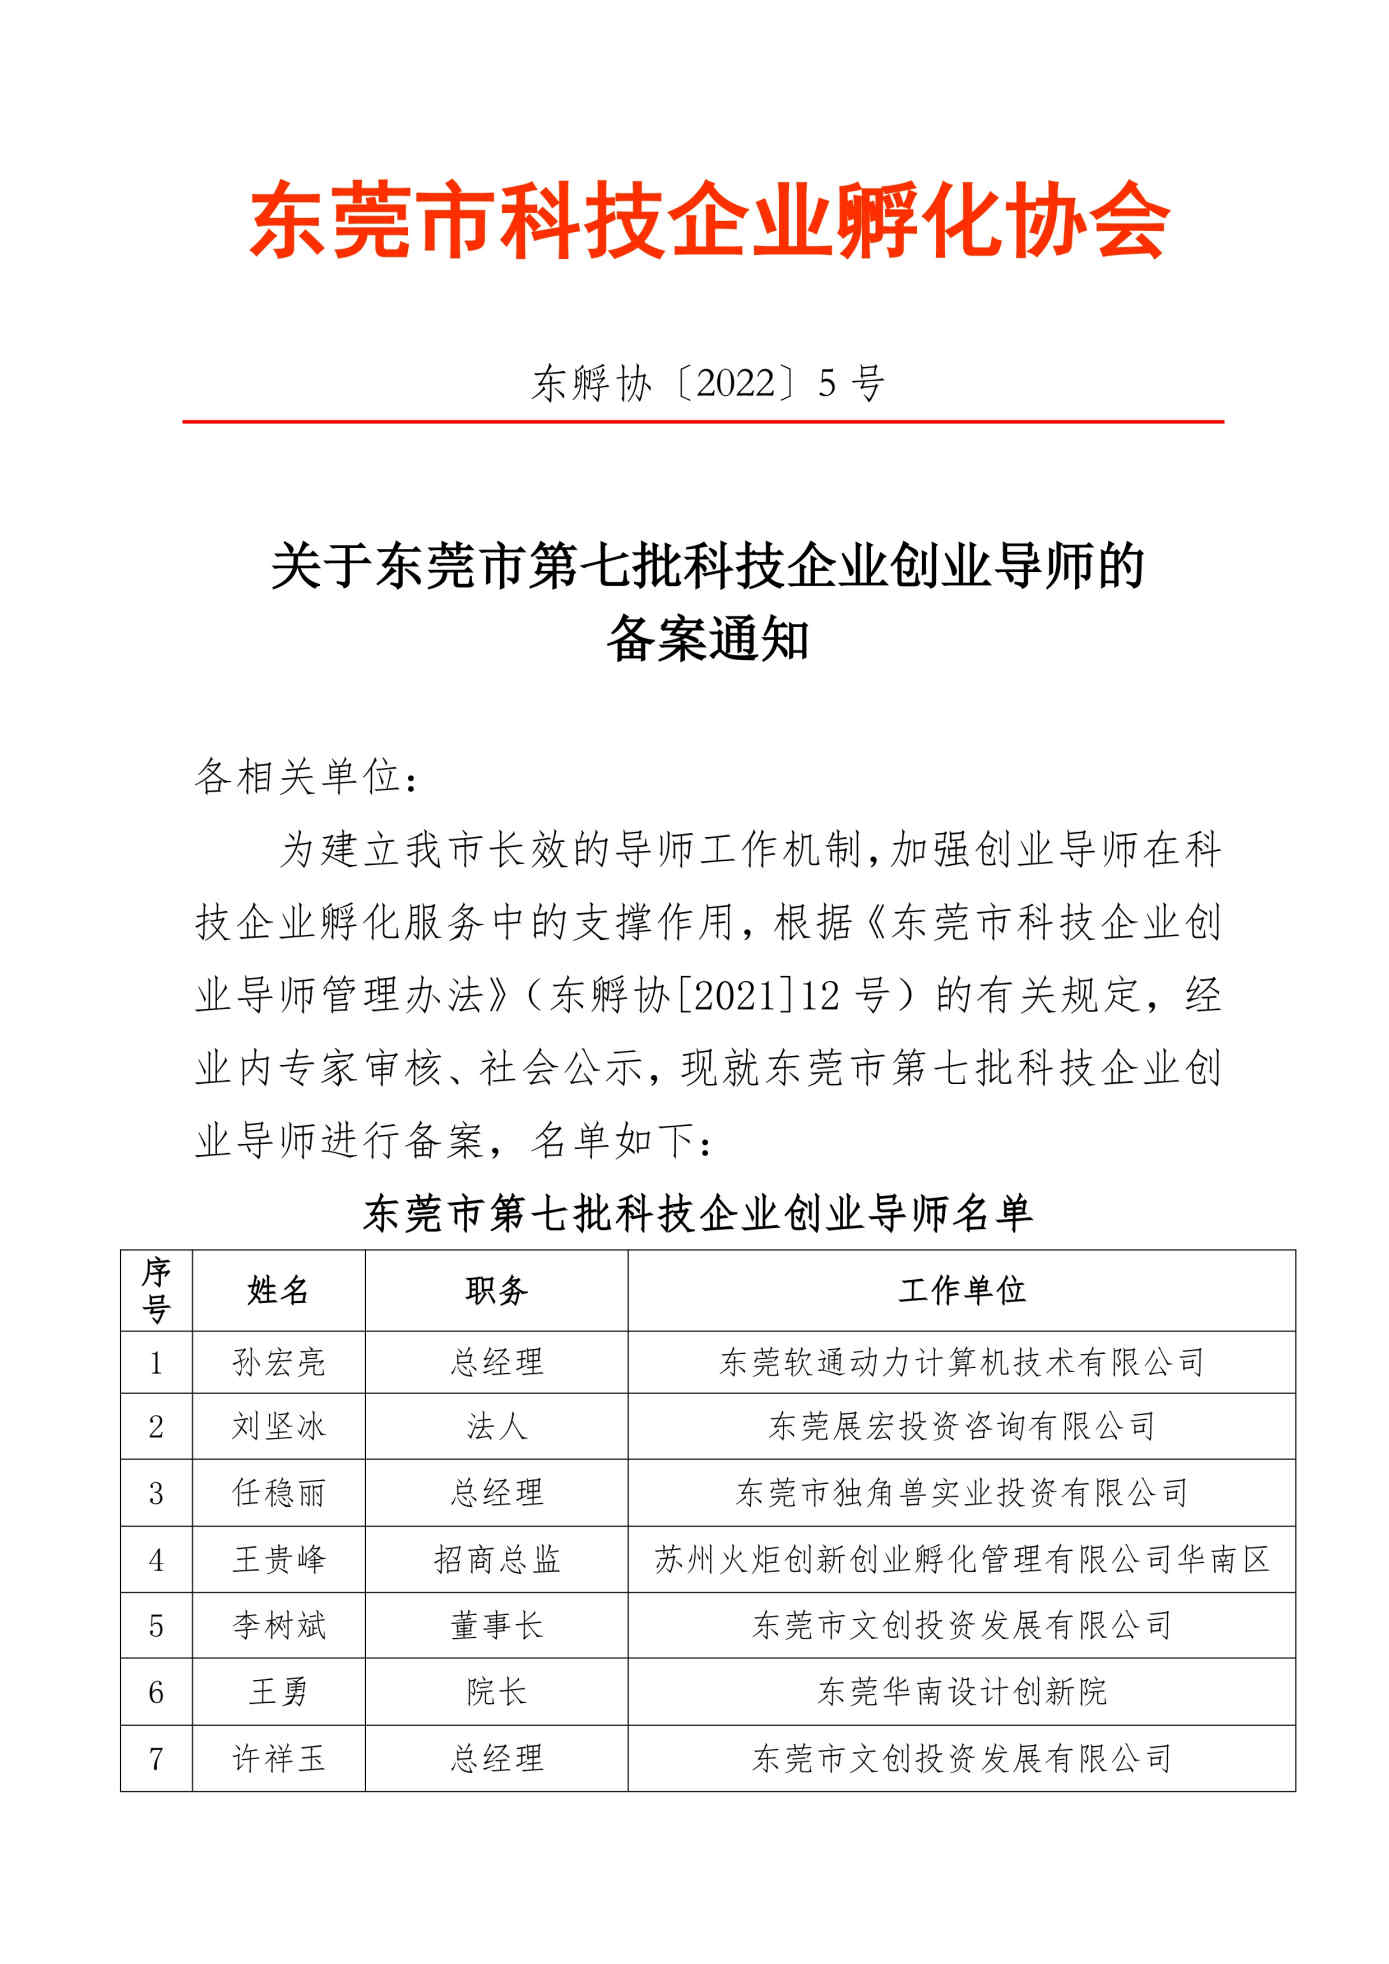 （东孵协〔2022〕5号）关于东莞市第七批科技企业创业导师的备案通知_1(1)_Page1.jpg